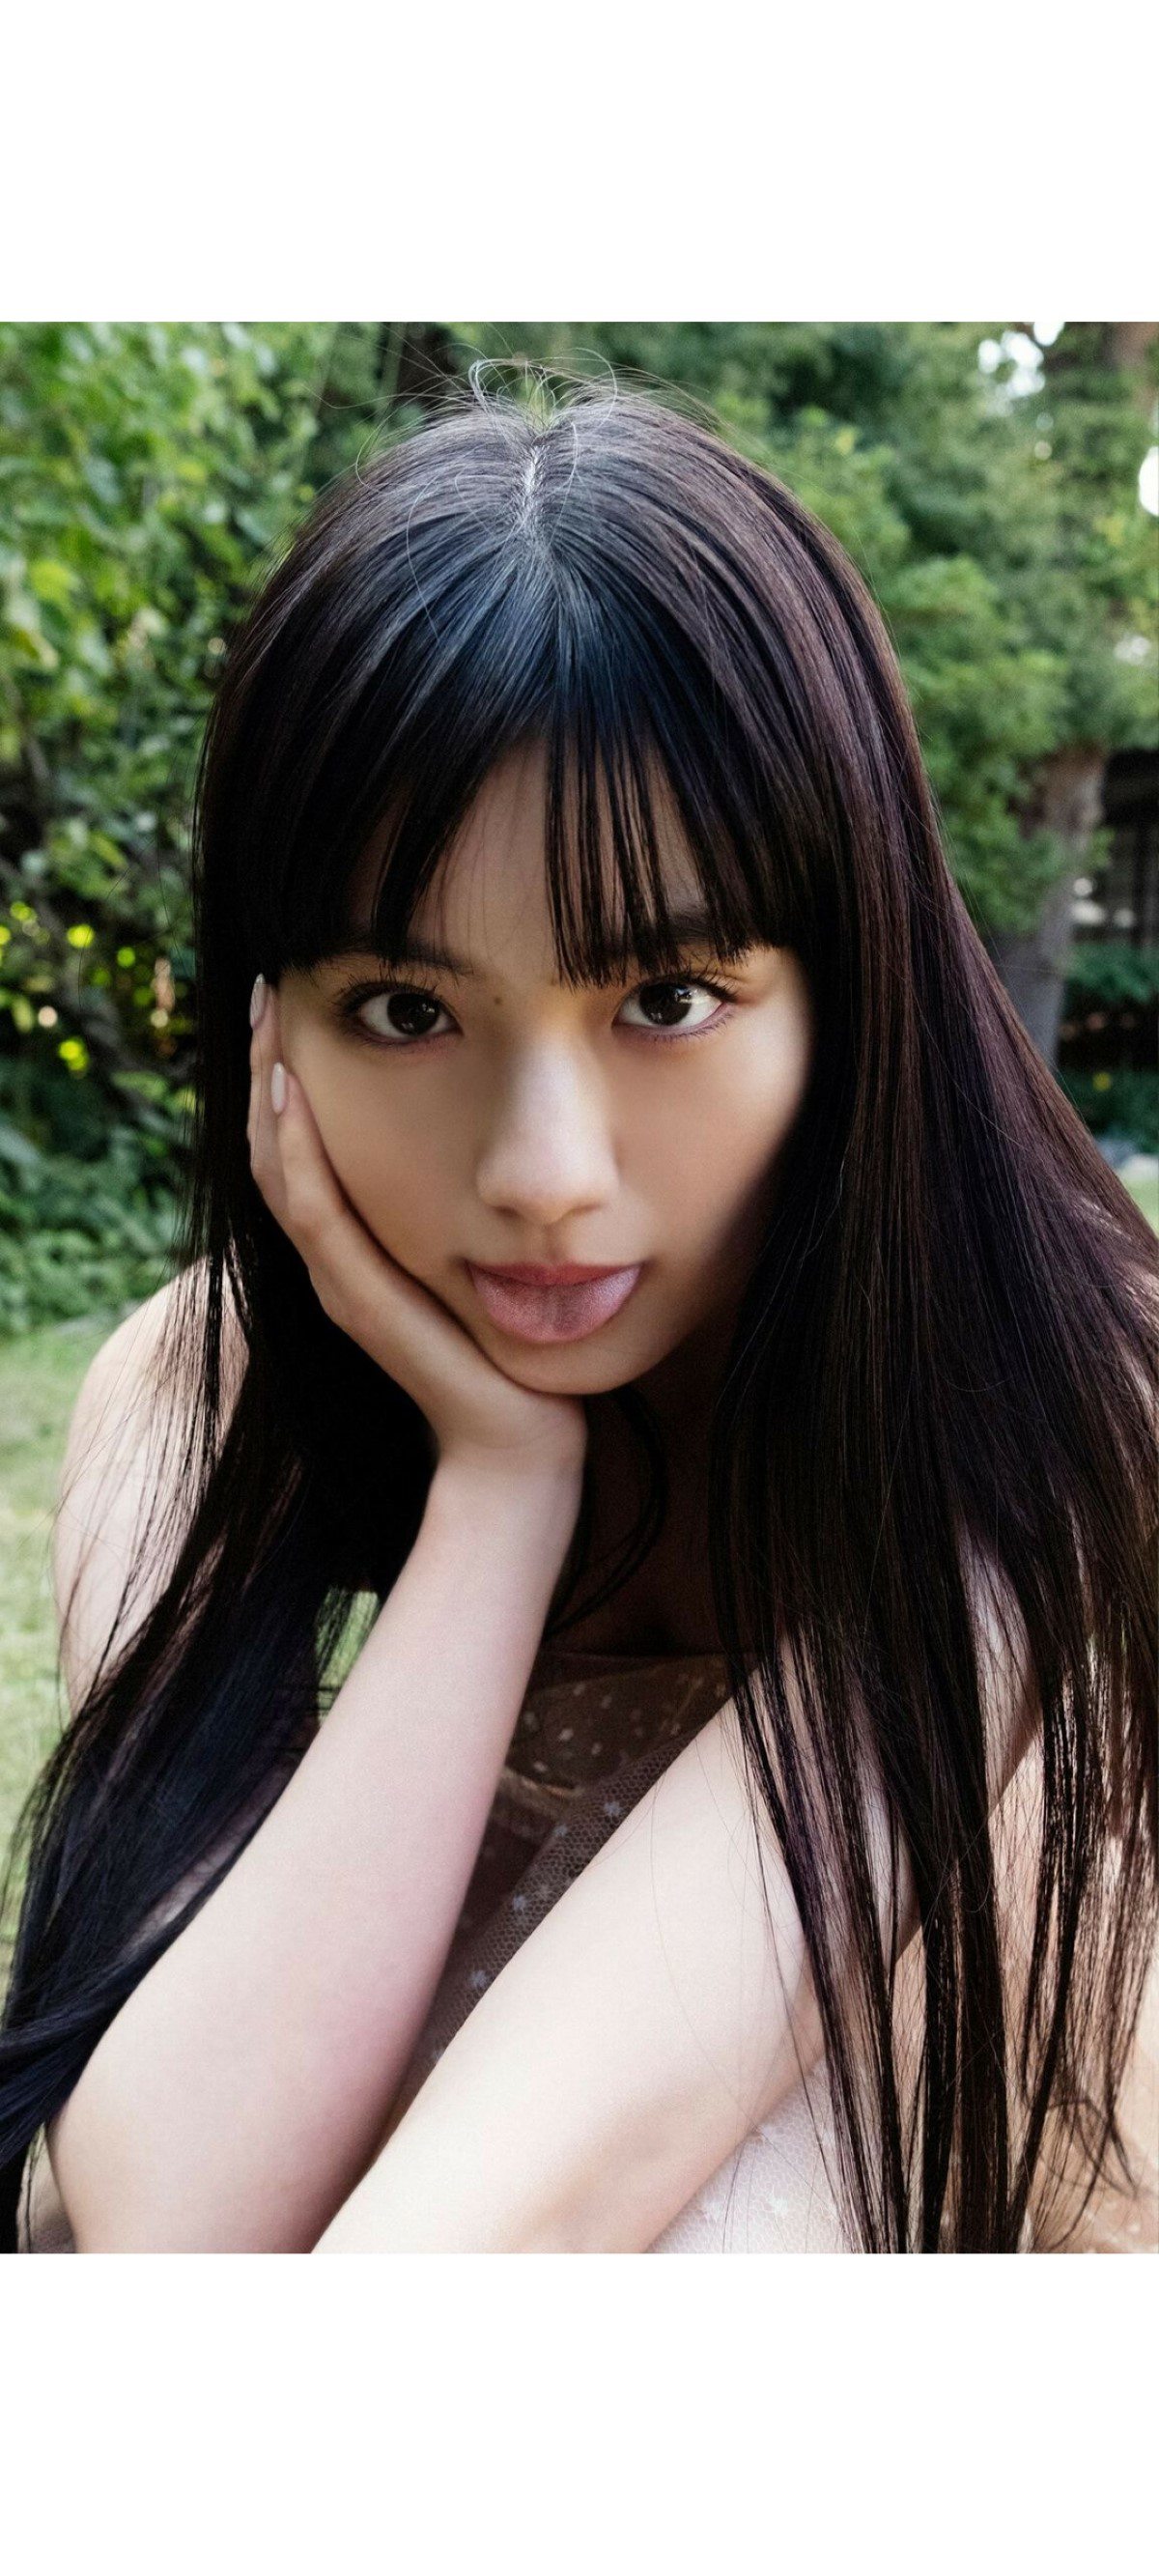 Weekly Photobook 2020 12 07 Noa Tsurushima 鶴嶋乃愛 A natural actress 生まれながらにして女優 0024 1509872256.jpg